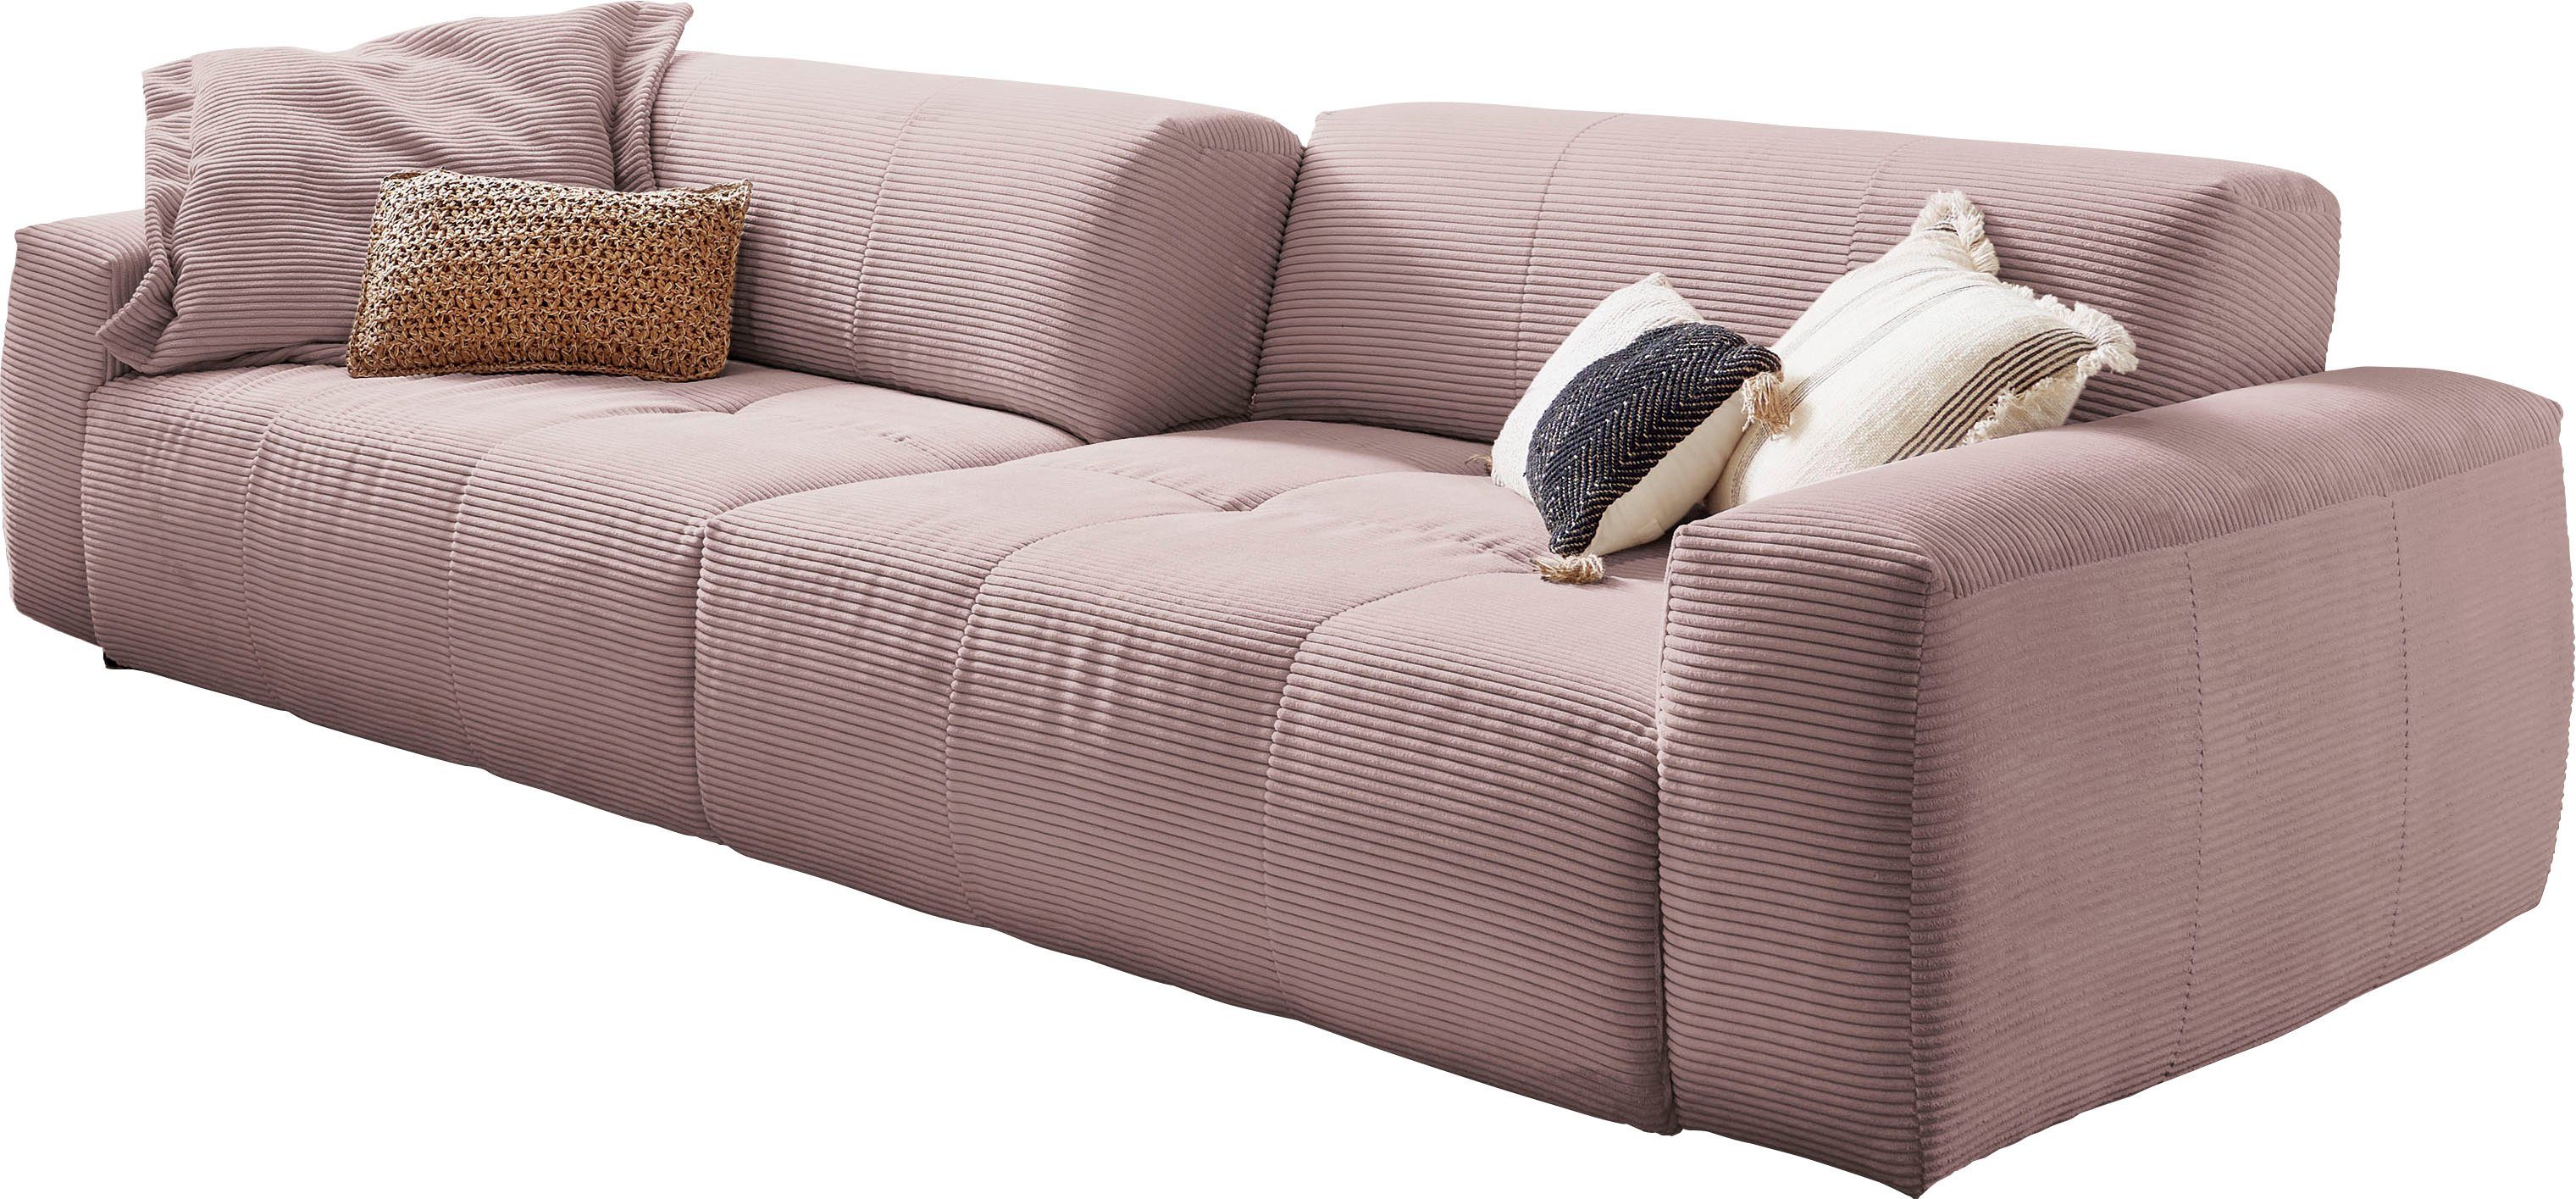 3C Candy Big-Sofa Yoshy, Zwei Sitztiefen durch verstellbare Rückenlehne, Bezug in Cord rosé